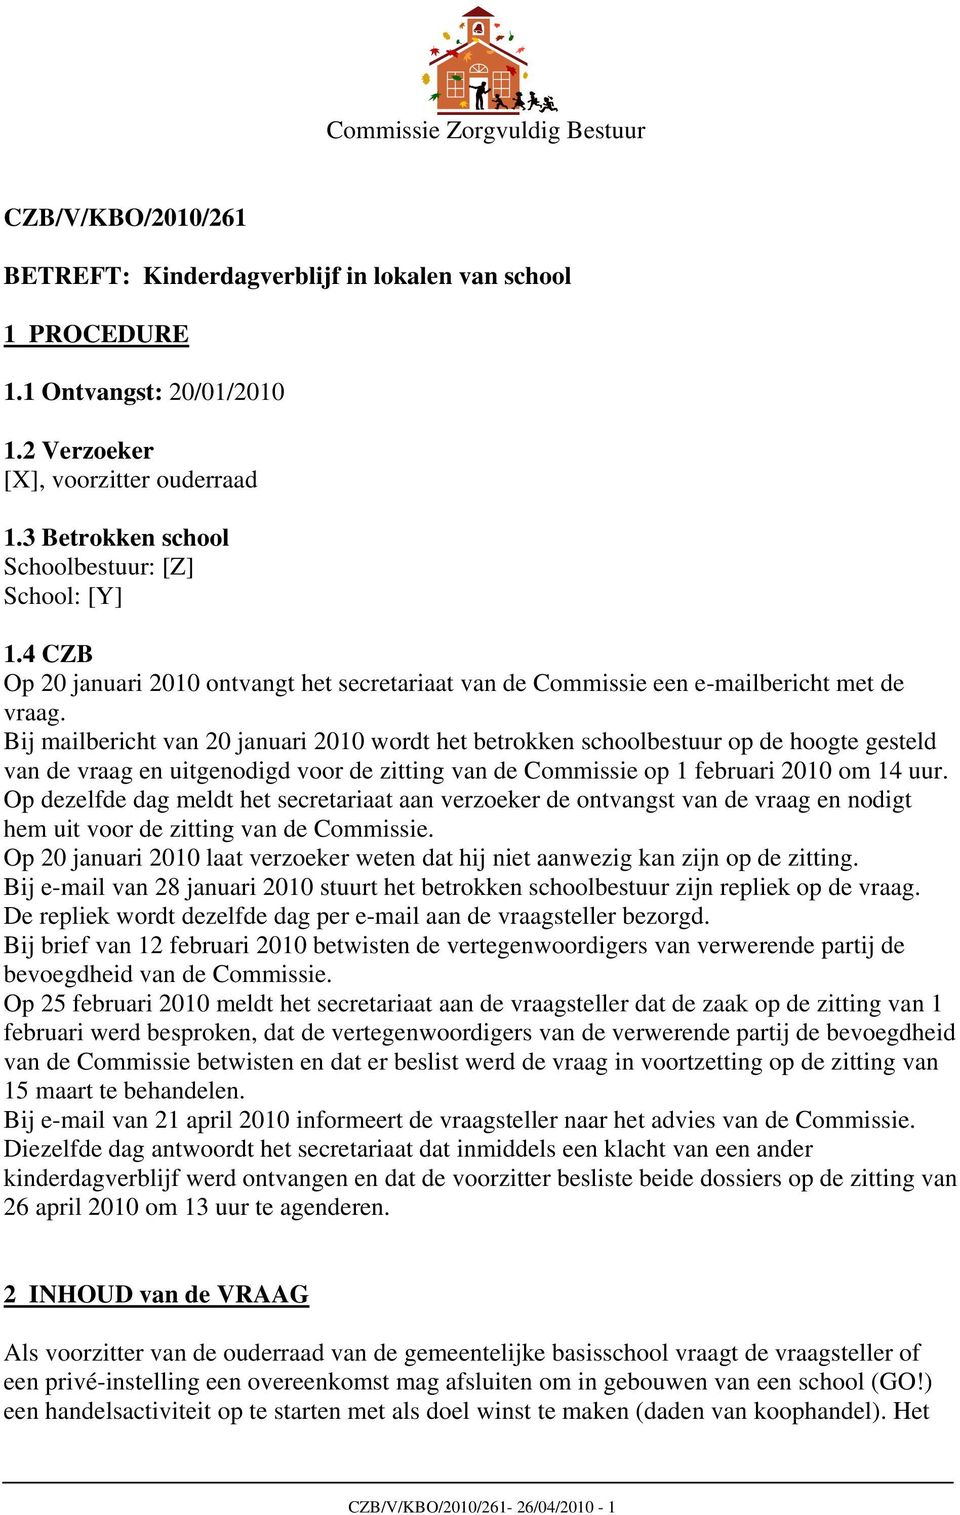 Bij mailbericht van 20 januari 2010 wordt het betrokken schoolbestuur op de hoogte gesteld van de vraag en uitgenodigd voor de zitting van de Commissie op 1 februari 2010 om 14 uur.